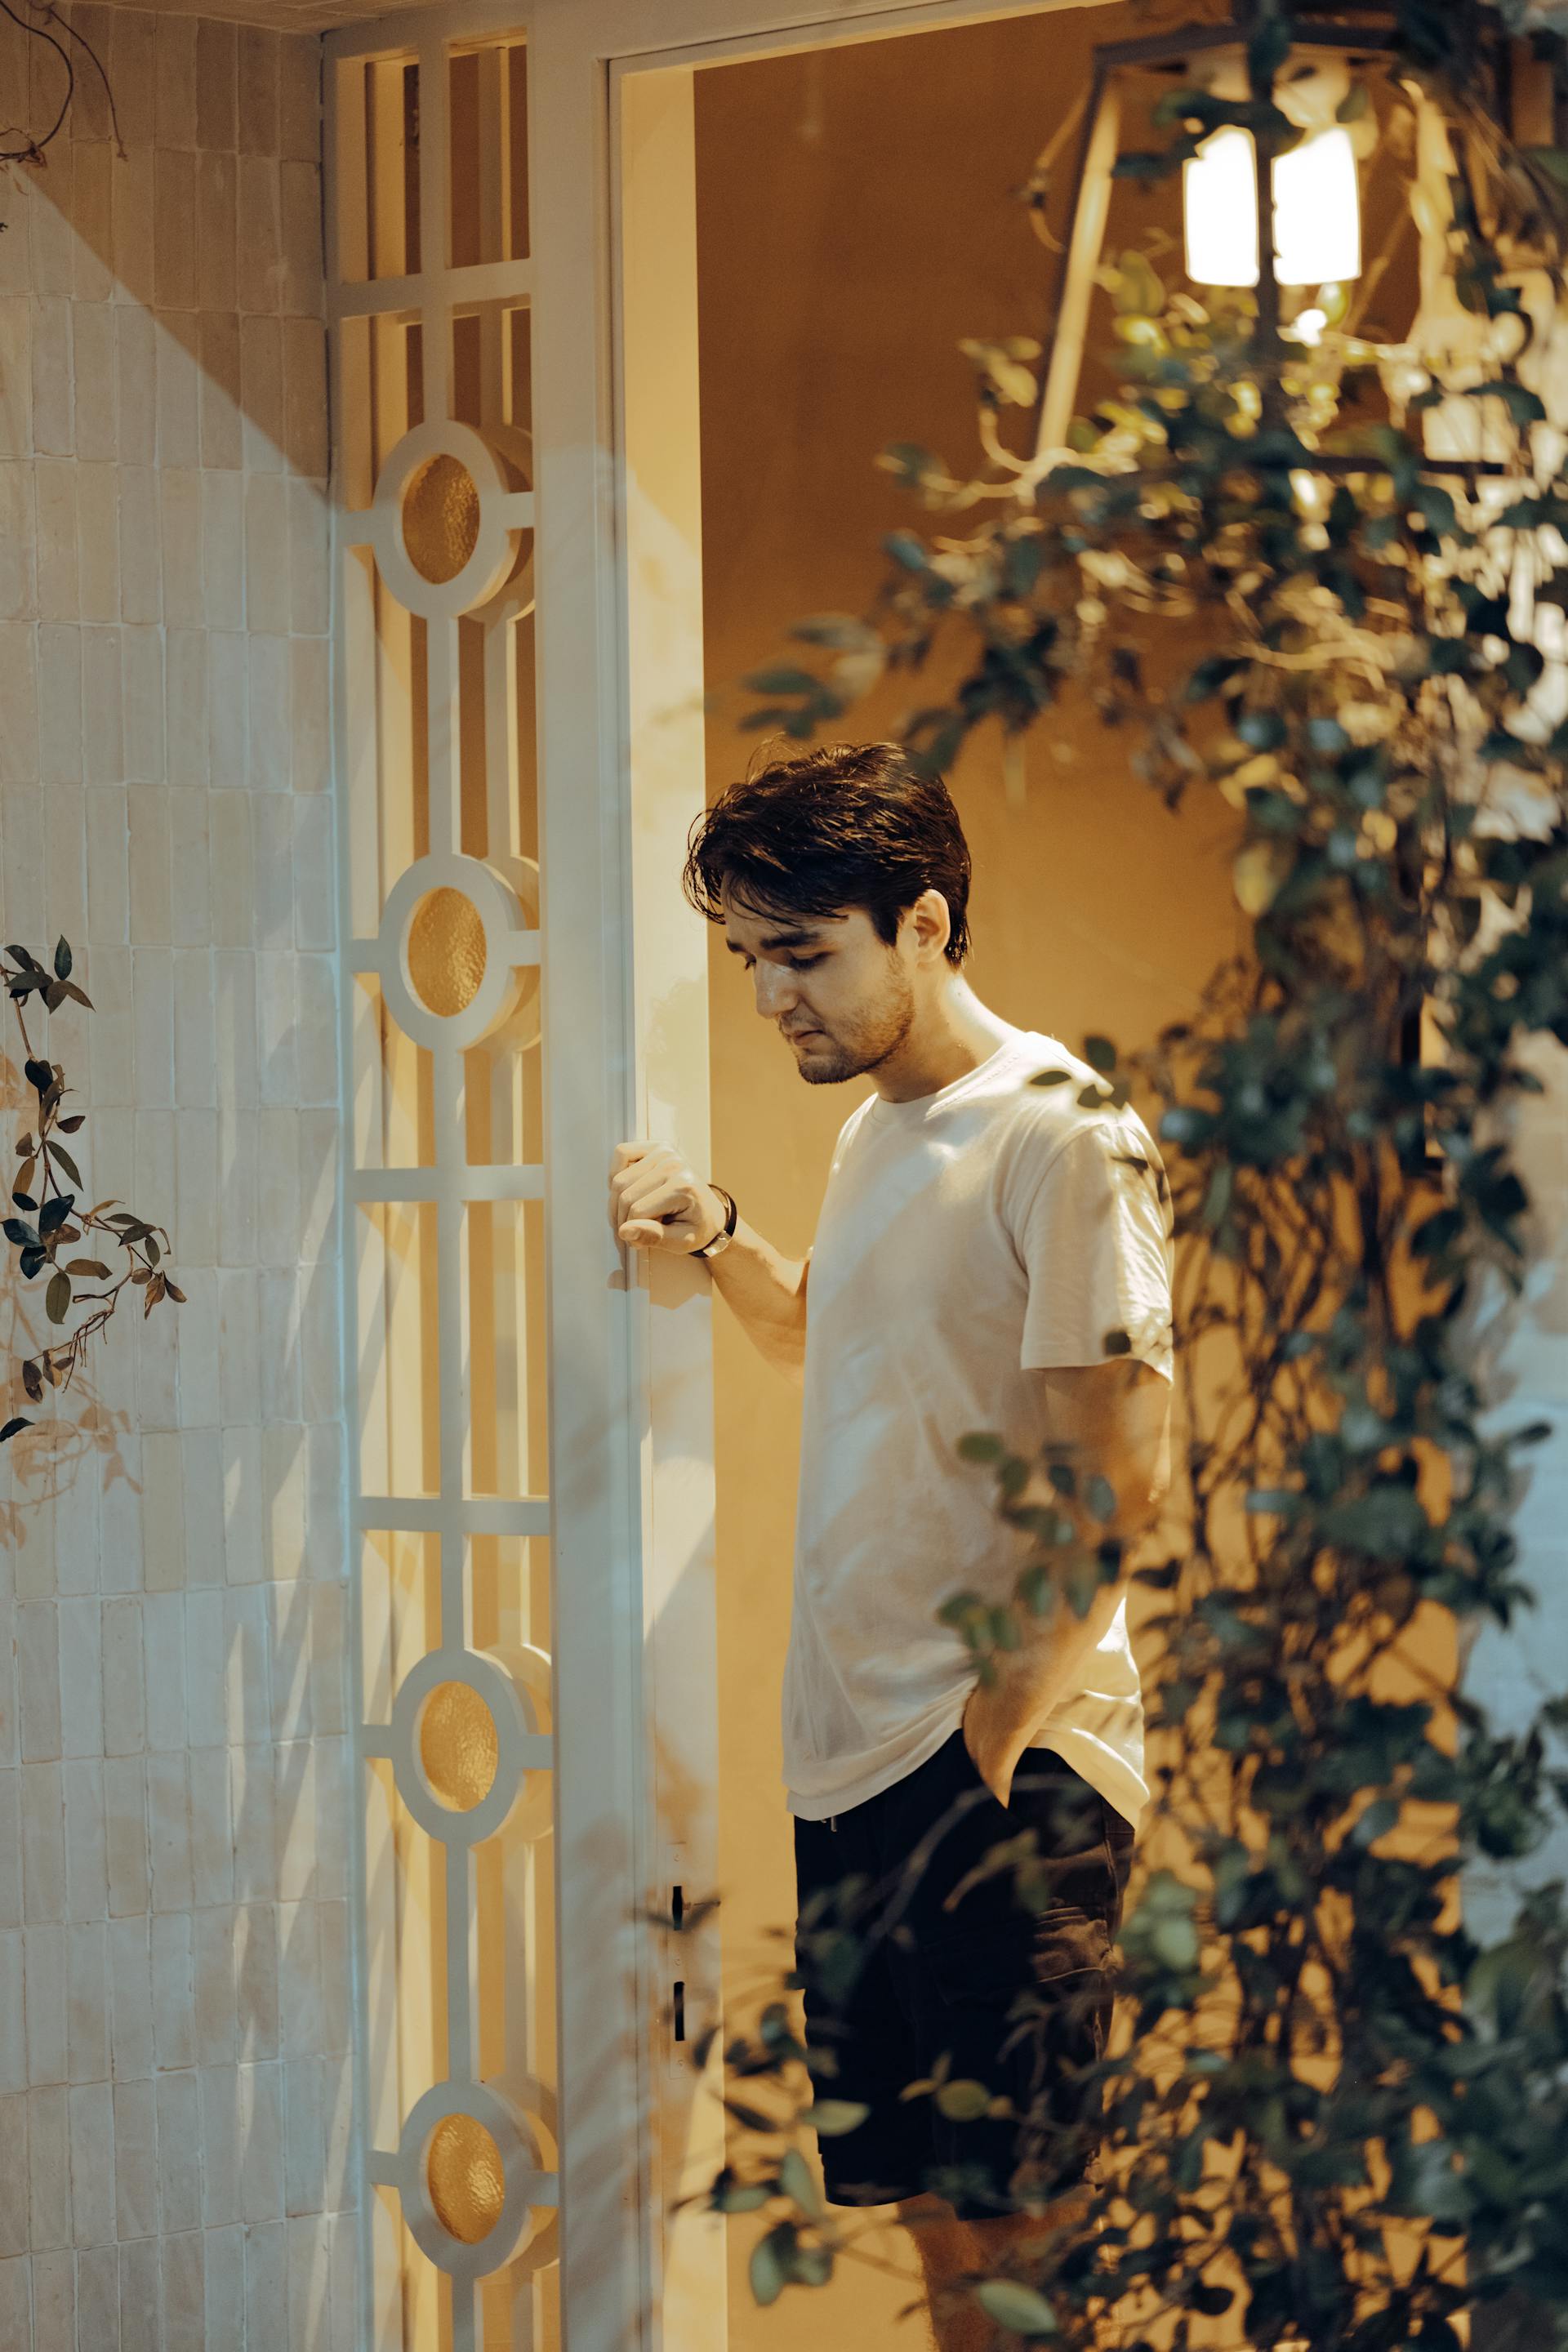 A man standing in the doorway | Source: Pexels